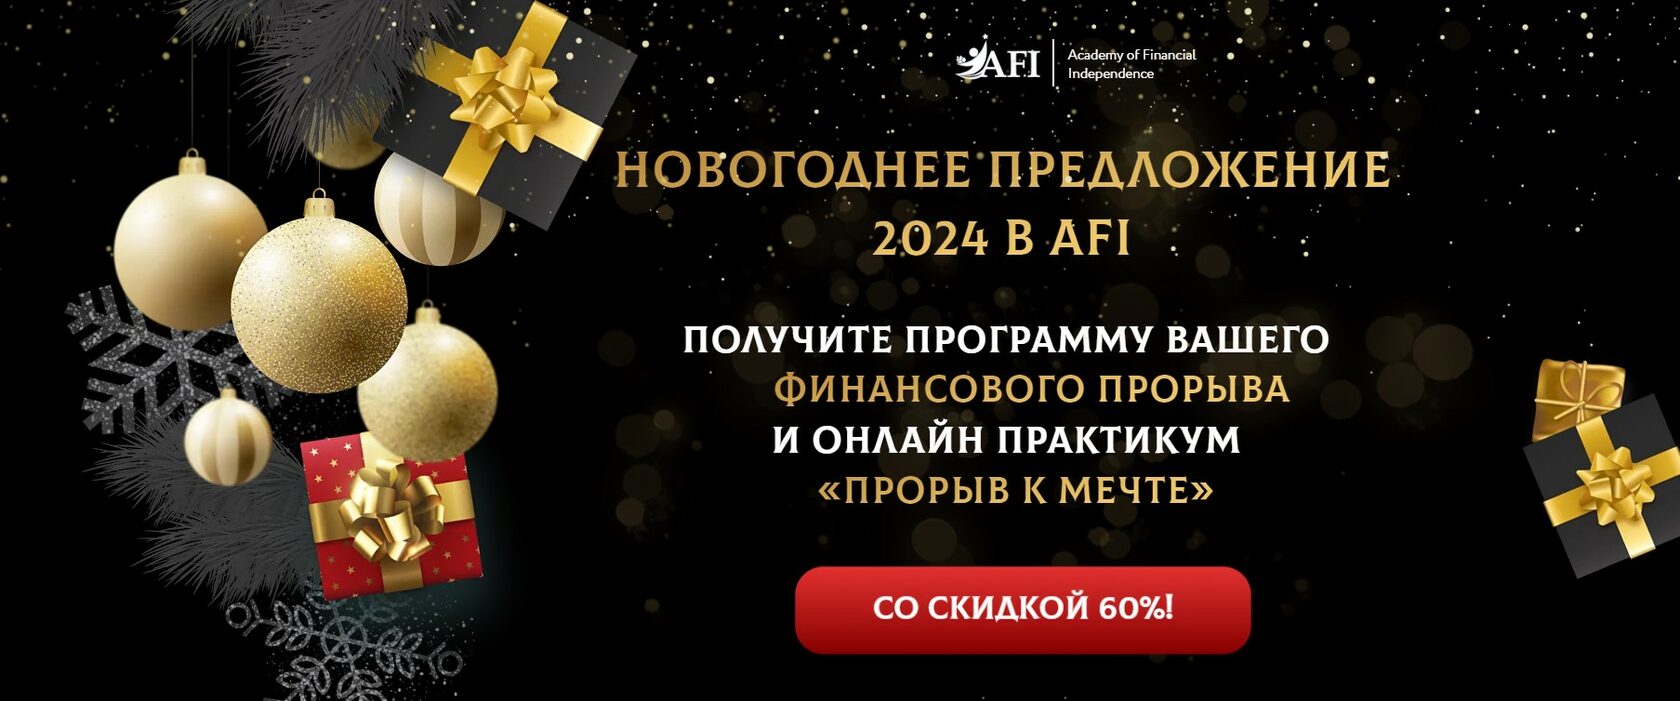 Новый год AFI 2024